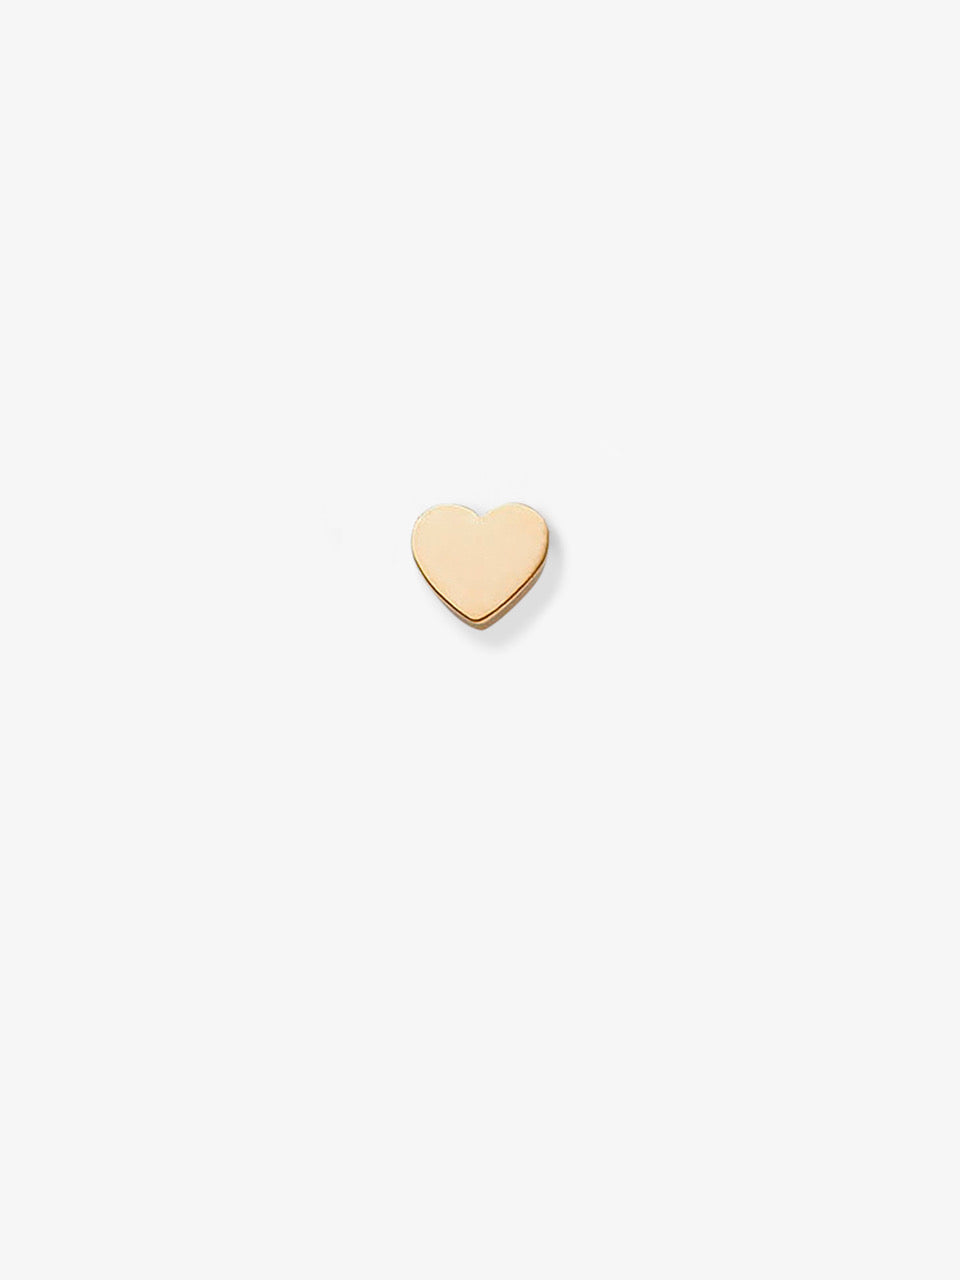 Heart Stud Single Earring in 18k Gold